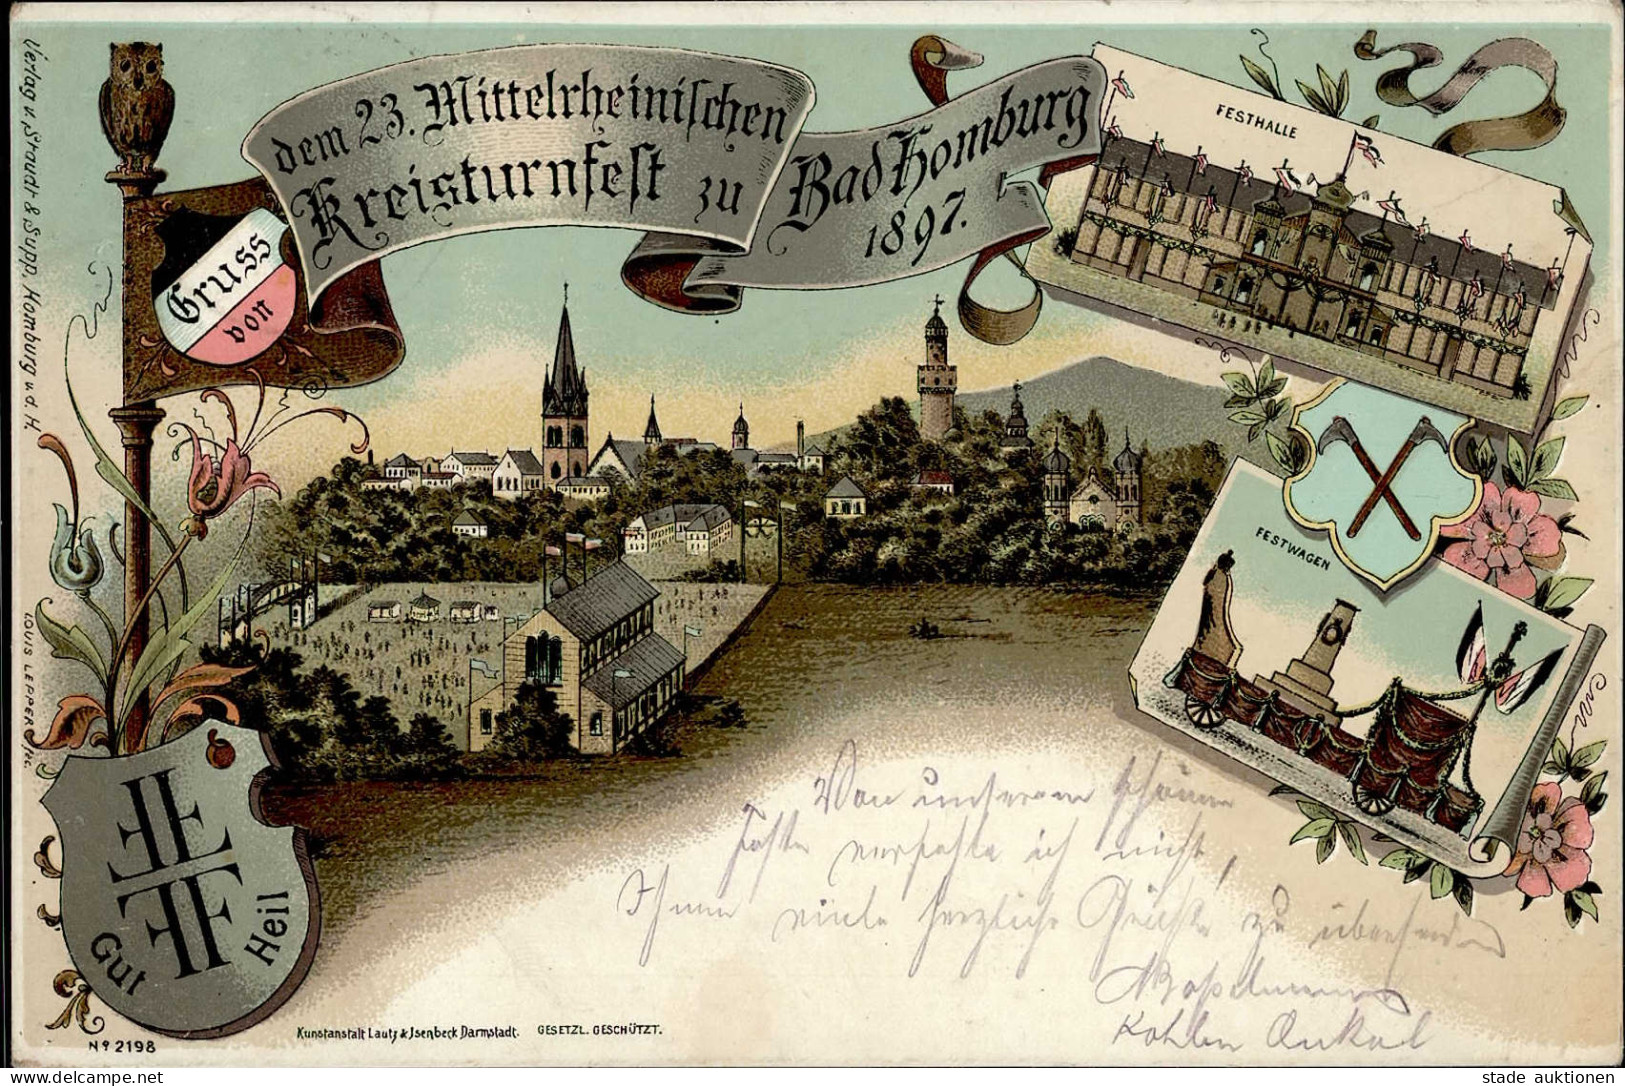 BAD HOMBURG - Gruss Vom 23.Mittlerh. KREISTURNFEST 1897 Mit S-o I-II Montagnes - Ausstellungen